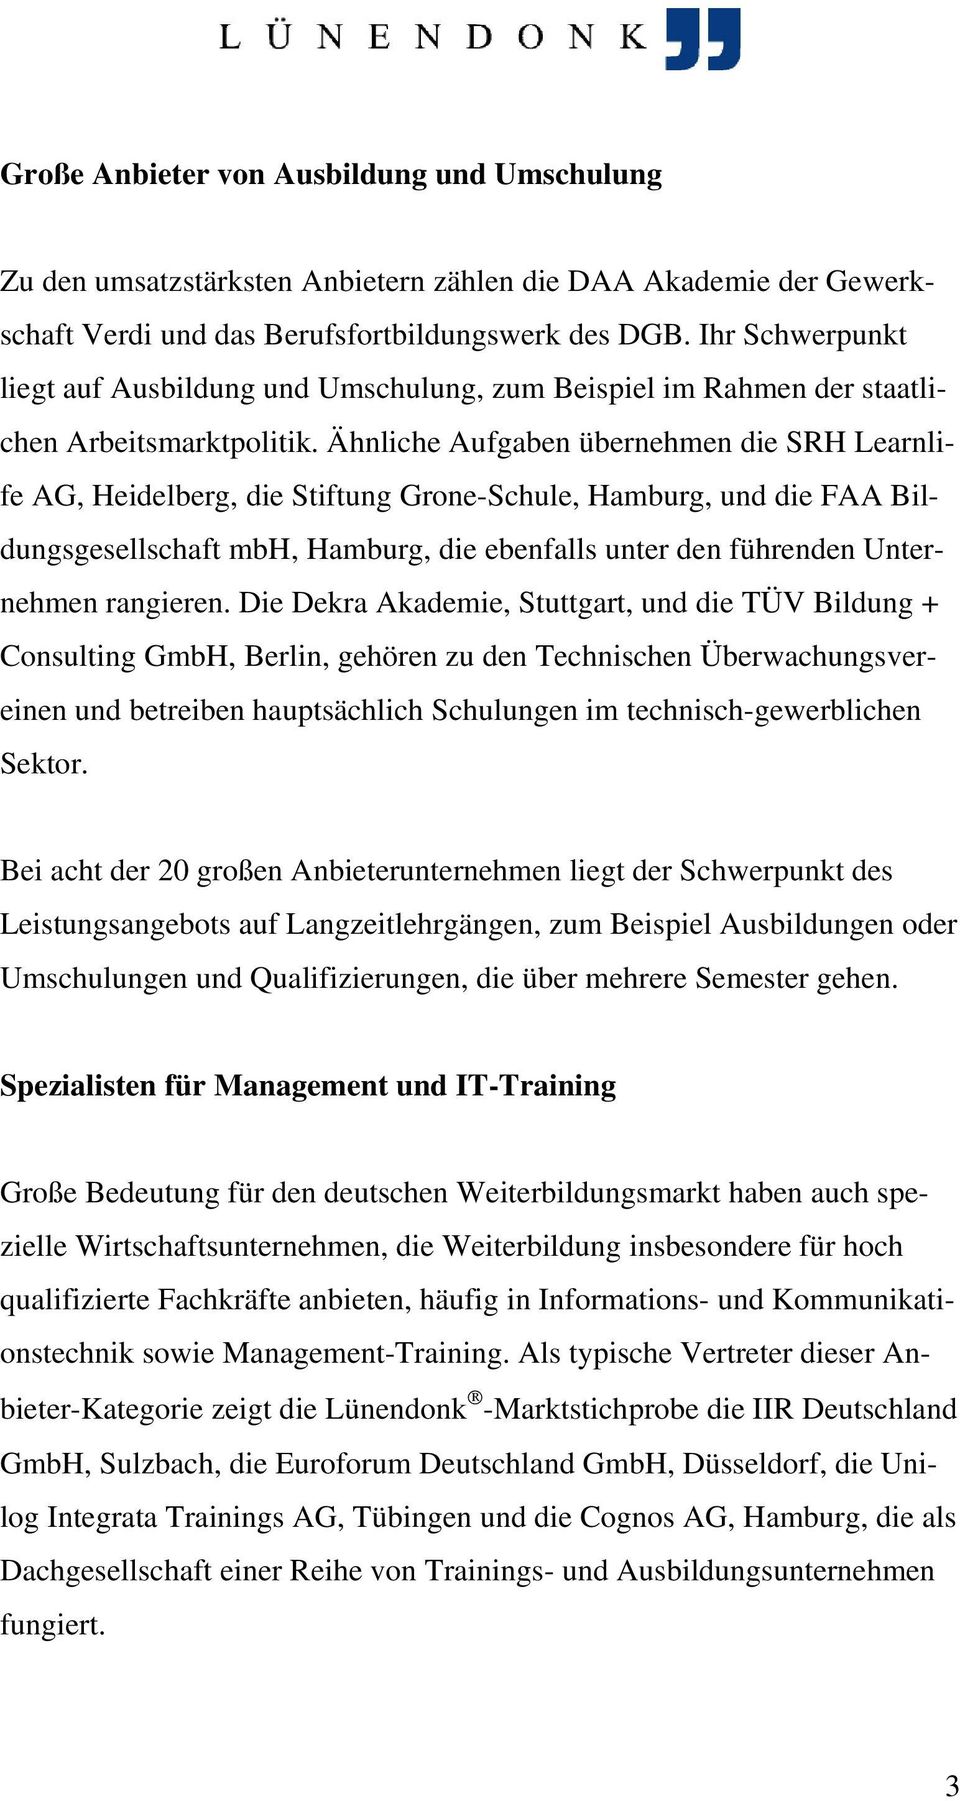 Ähnliche Aufgaben übernehmen die SRH Learnlife AG, Heidelberg, die Stiftung Grone-Schule, Hamburg, und die FAA Bildungsgesellschaft mbh, Hamburg, die ebenfalls unter den führenden Unternehmen